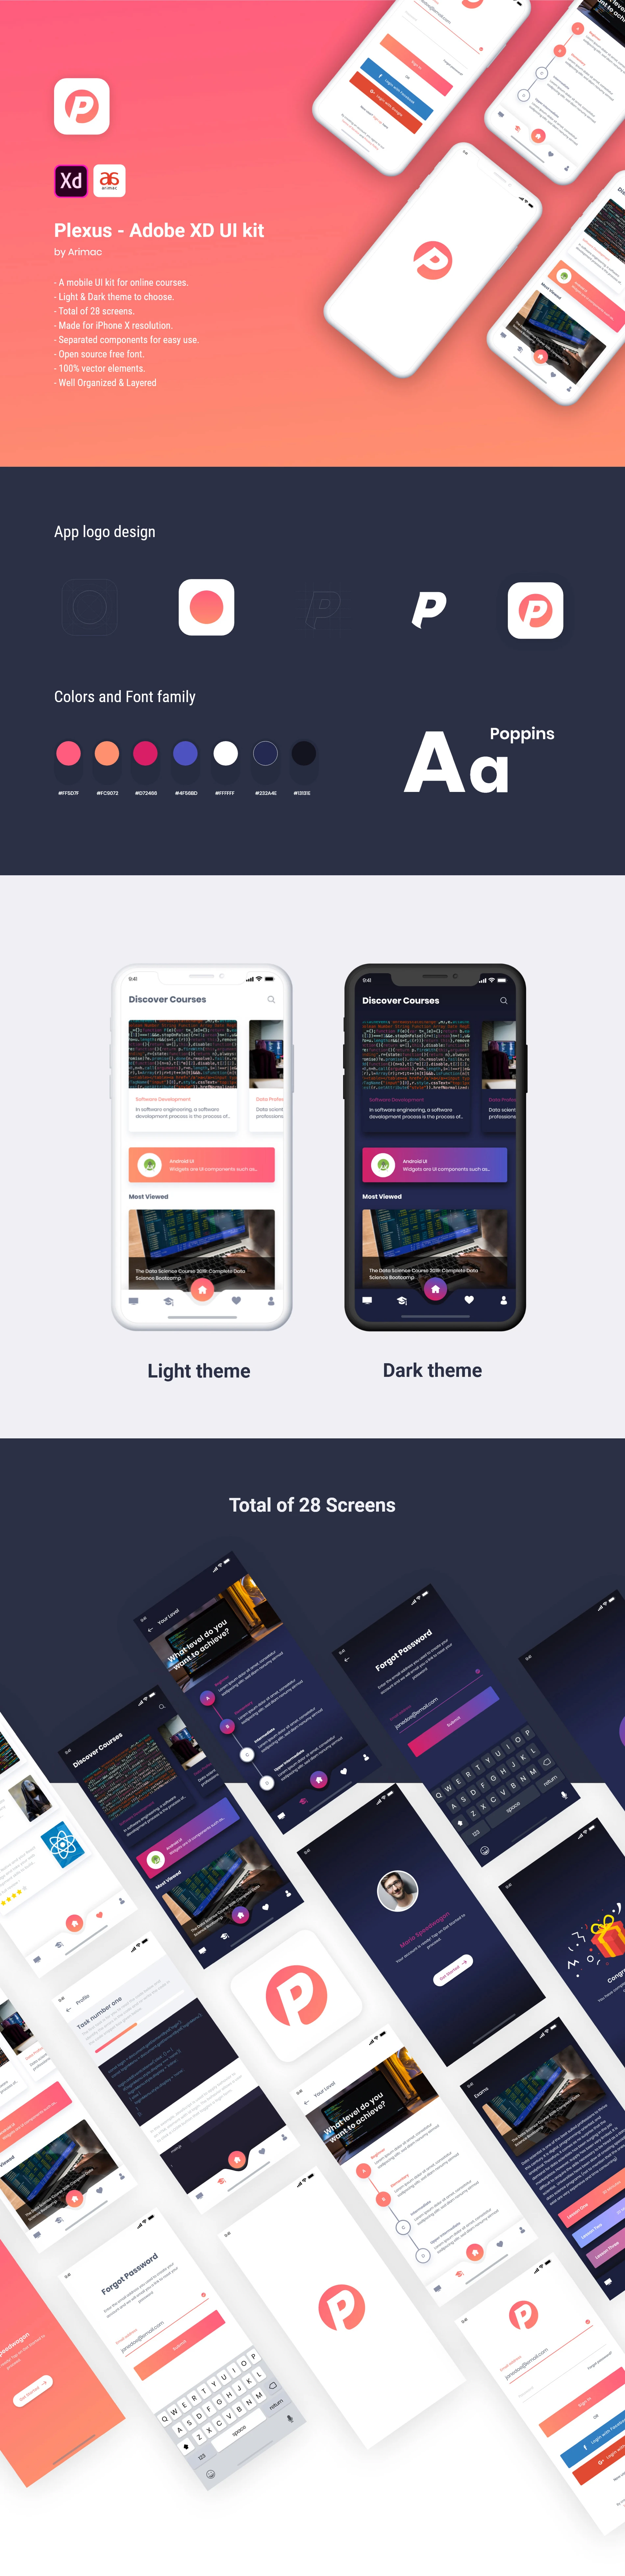 Plexus - Free Adobe XD UI Kit - A mobile UI kit for online courses. Light & Dark theme to choose.